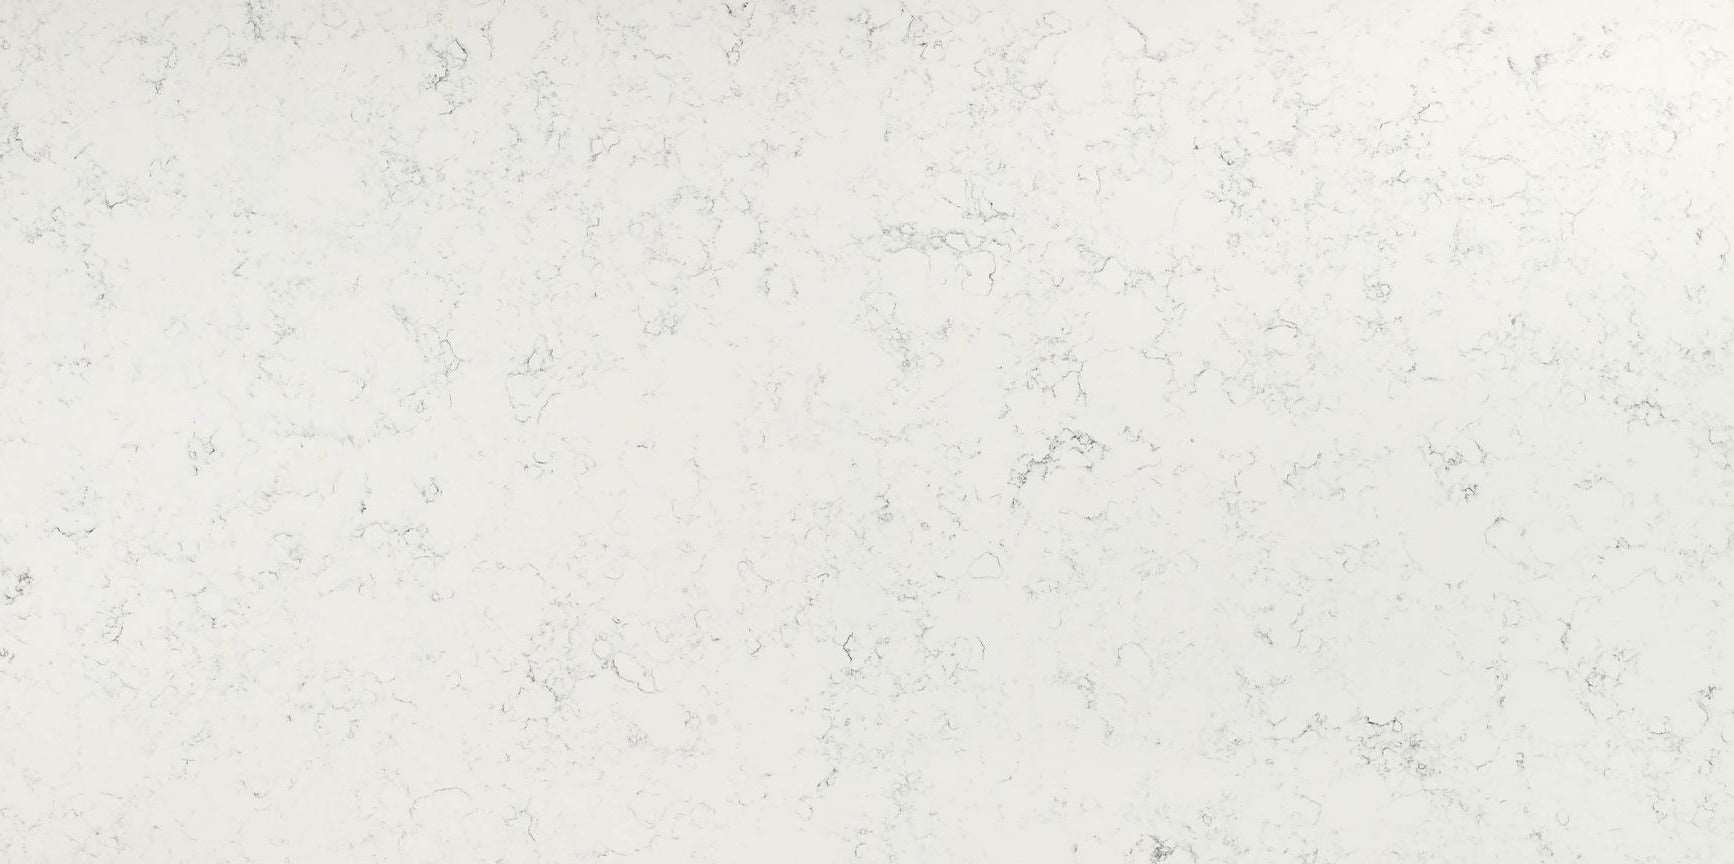 Carrara White quartz slab with a soft white hue and smoky grey veins.